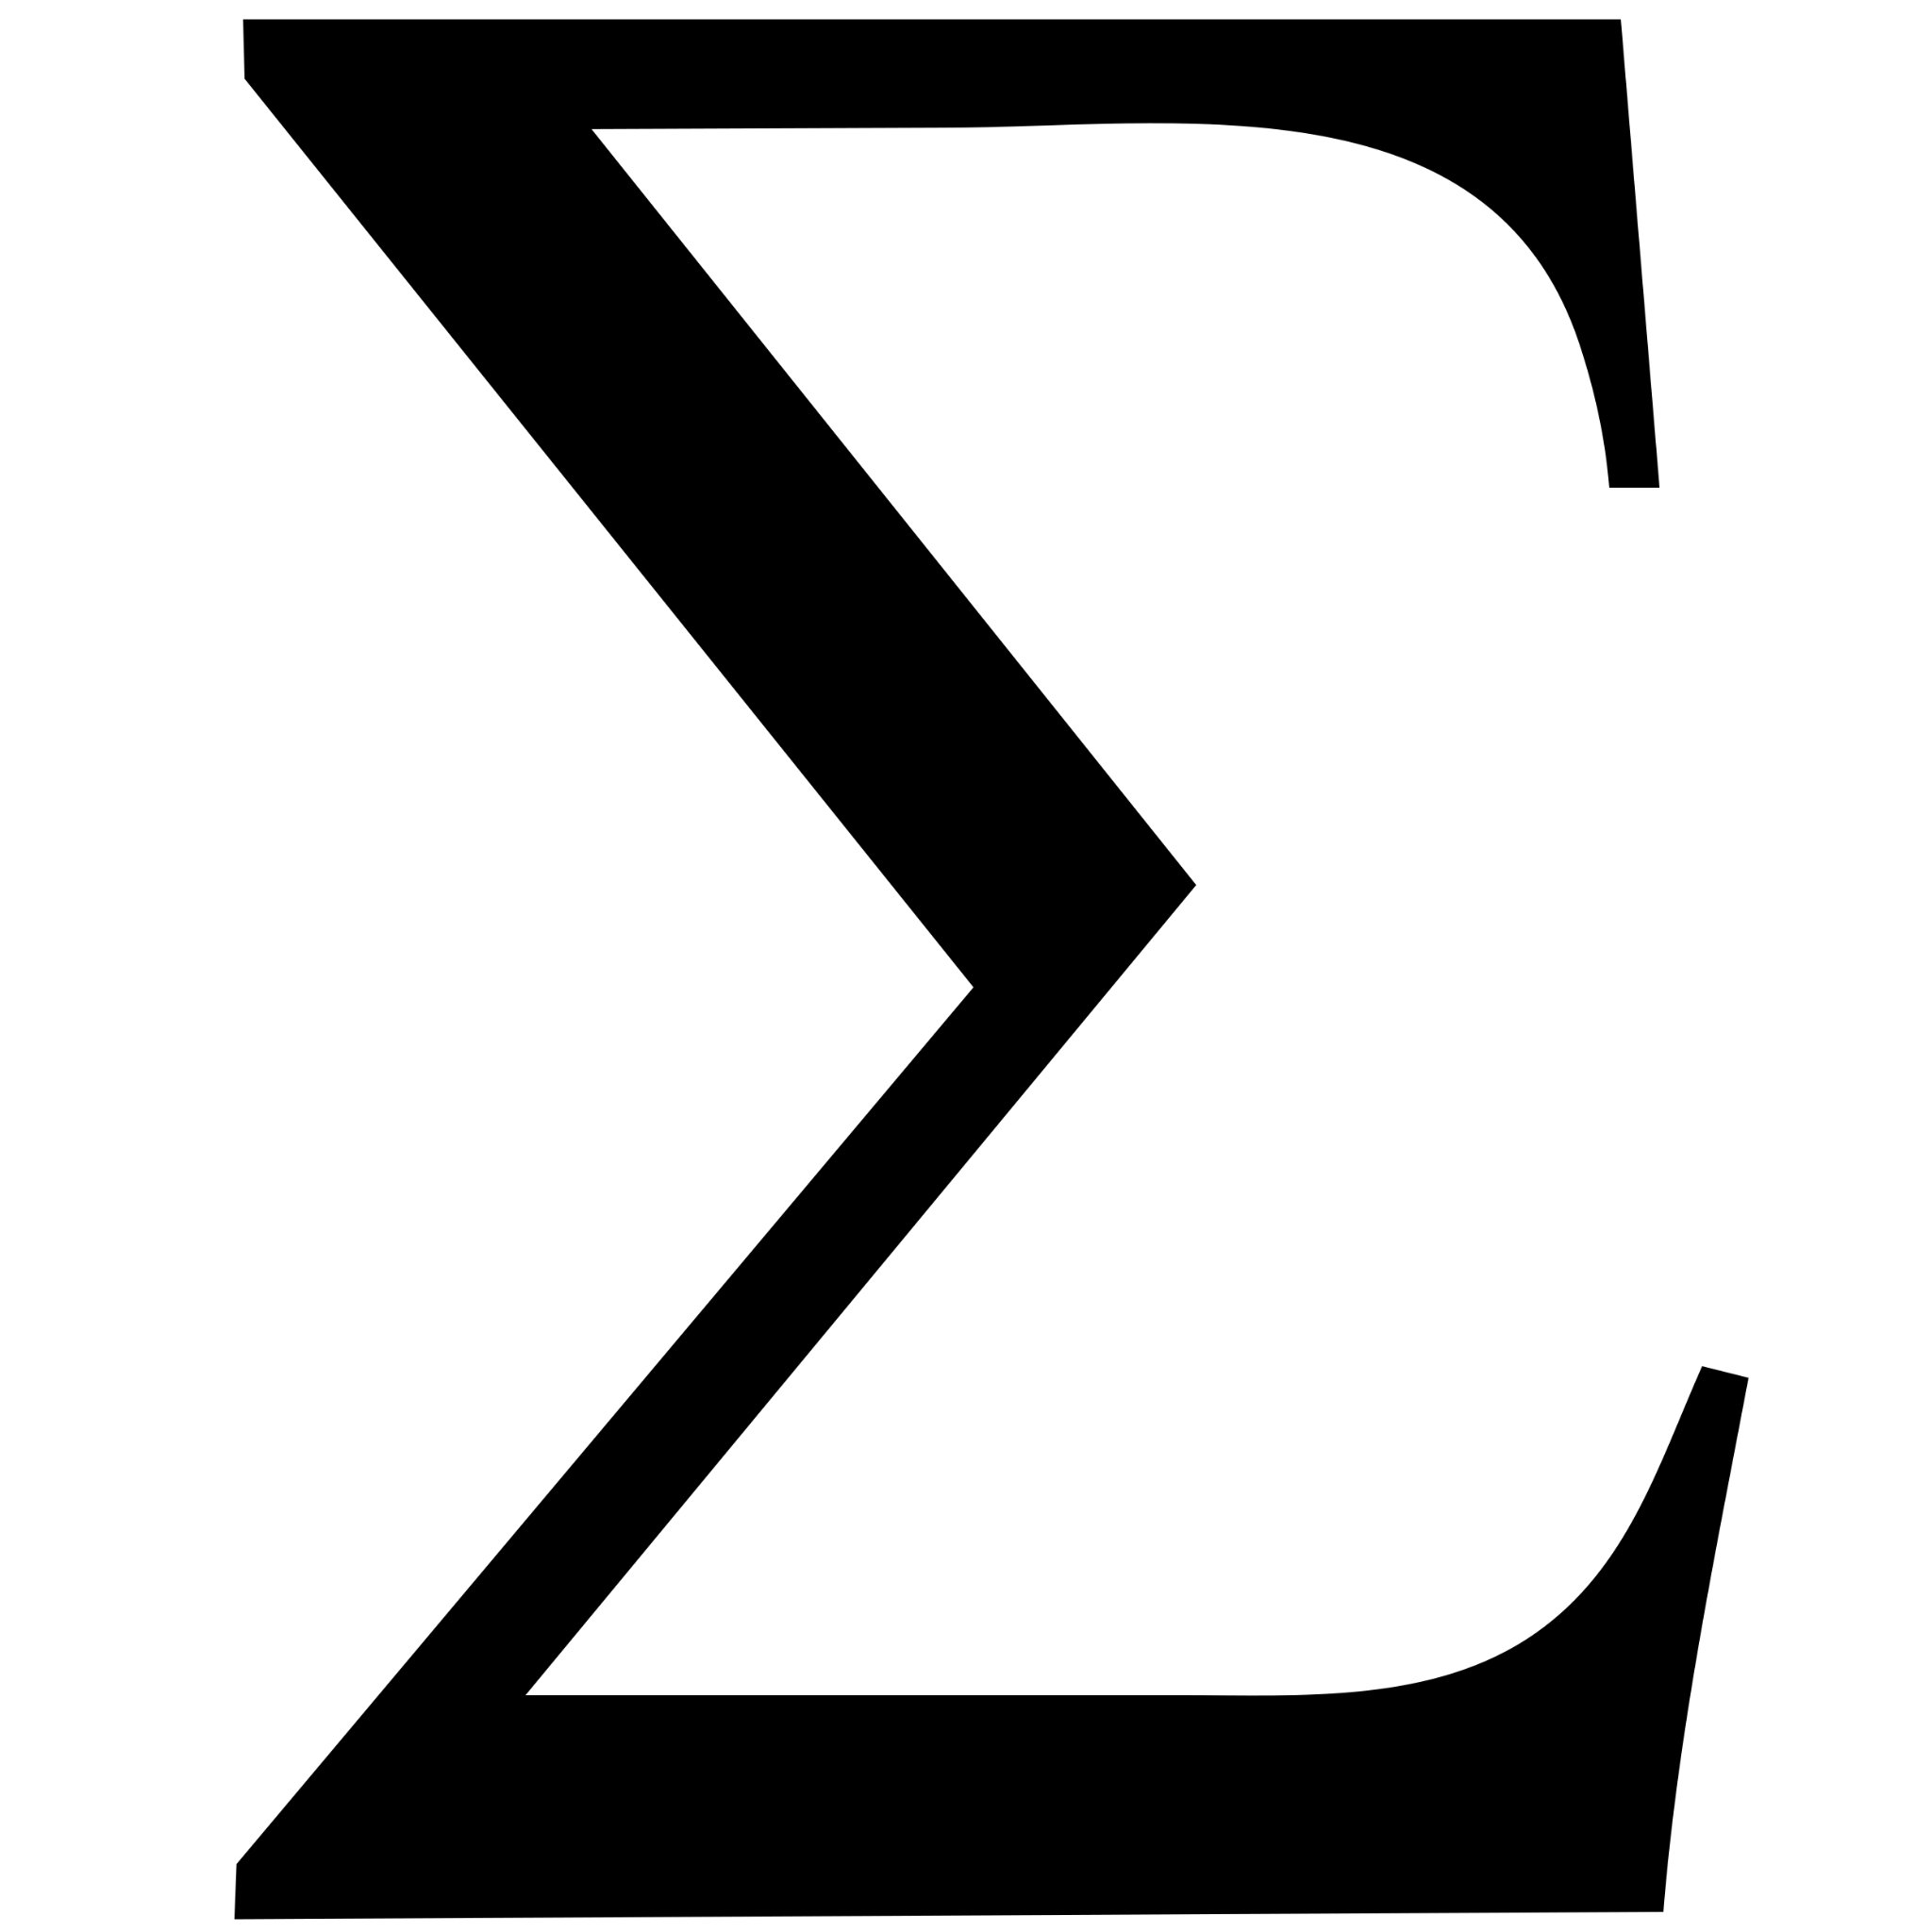 Картинка сигмы. Сигма буква греческого алфавита. Греческая Эпсилон символ. Sigma буква греческого алфавита. Греческая Сигма символ.